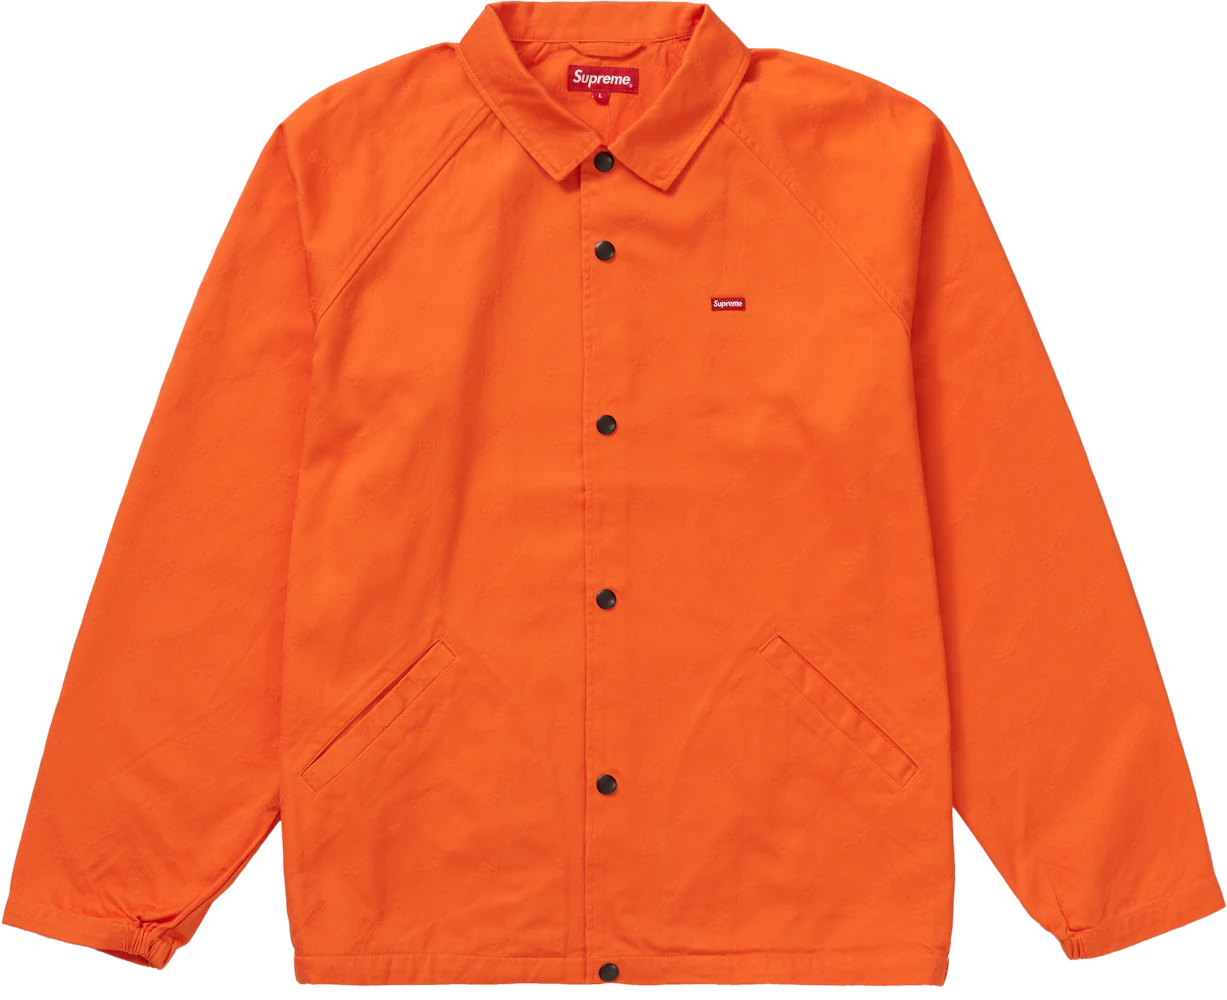 Supreme Snap Front Jacquard Logos Twill Jacket Orange Men's - FW19 - US